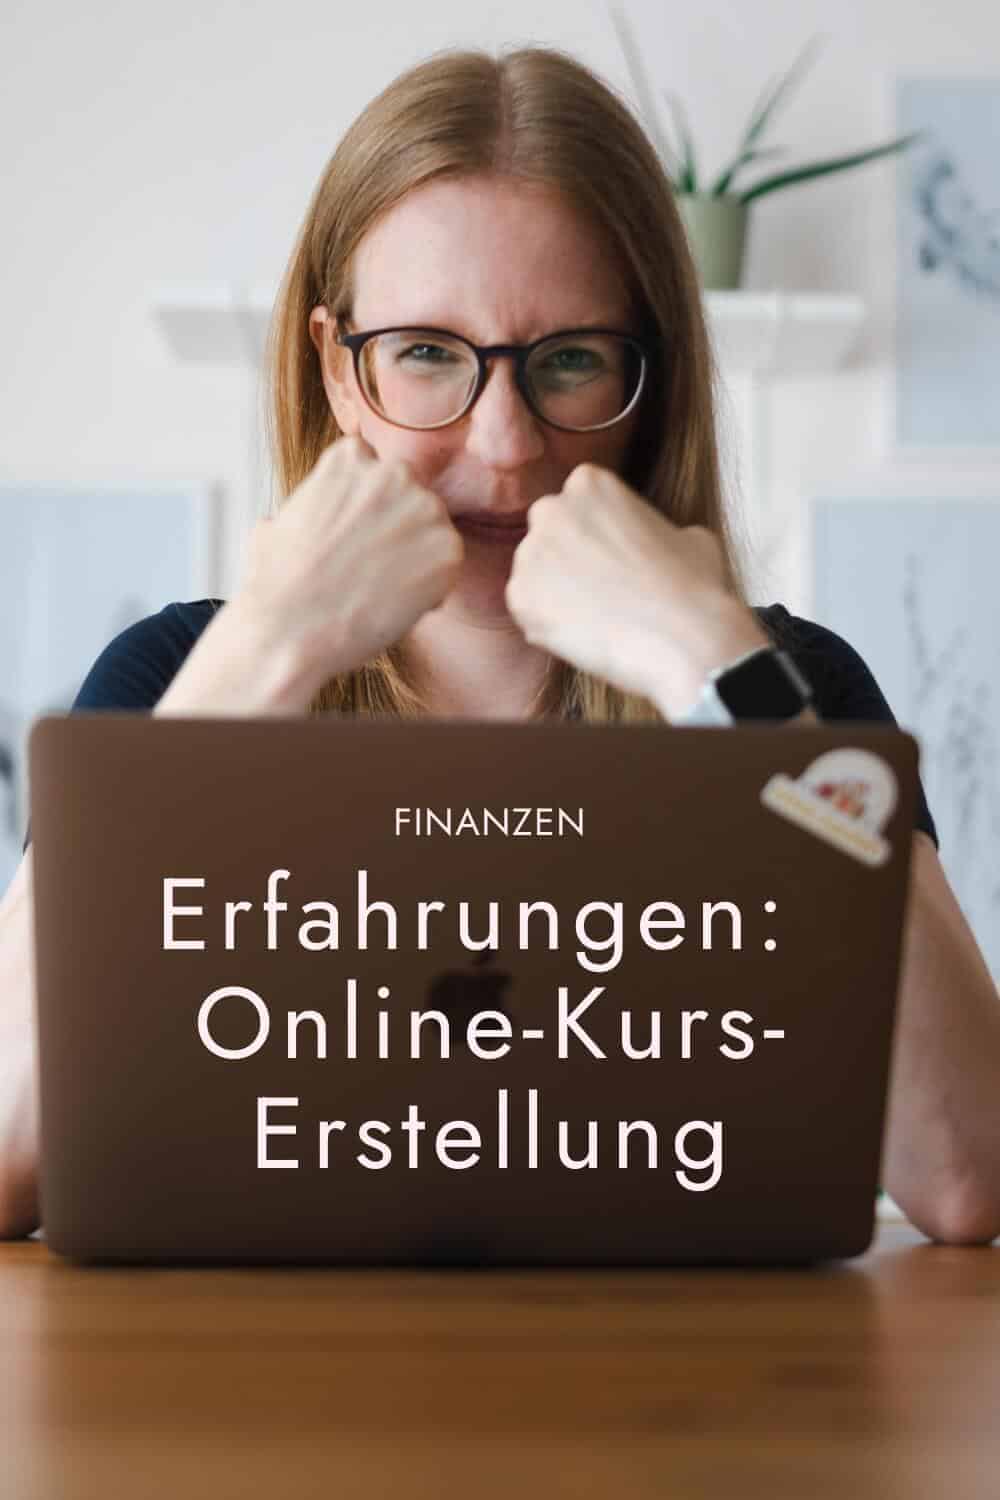 Ich teile meine Erfahrungen bei der Online-Kurs-Erstellung: Finanzen, elopage & Co. - sarah-depold.de